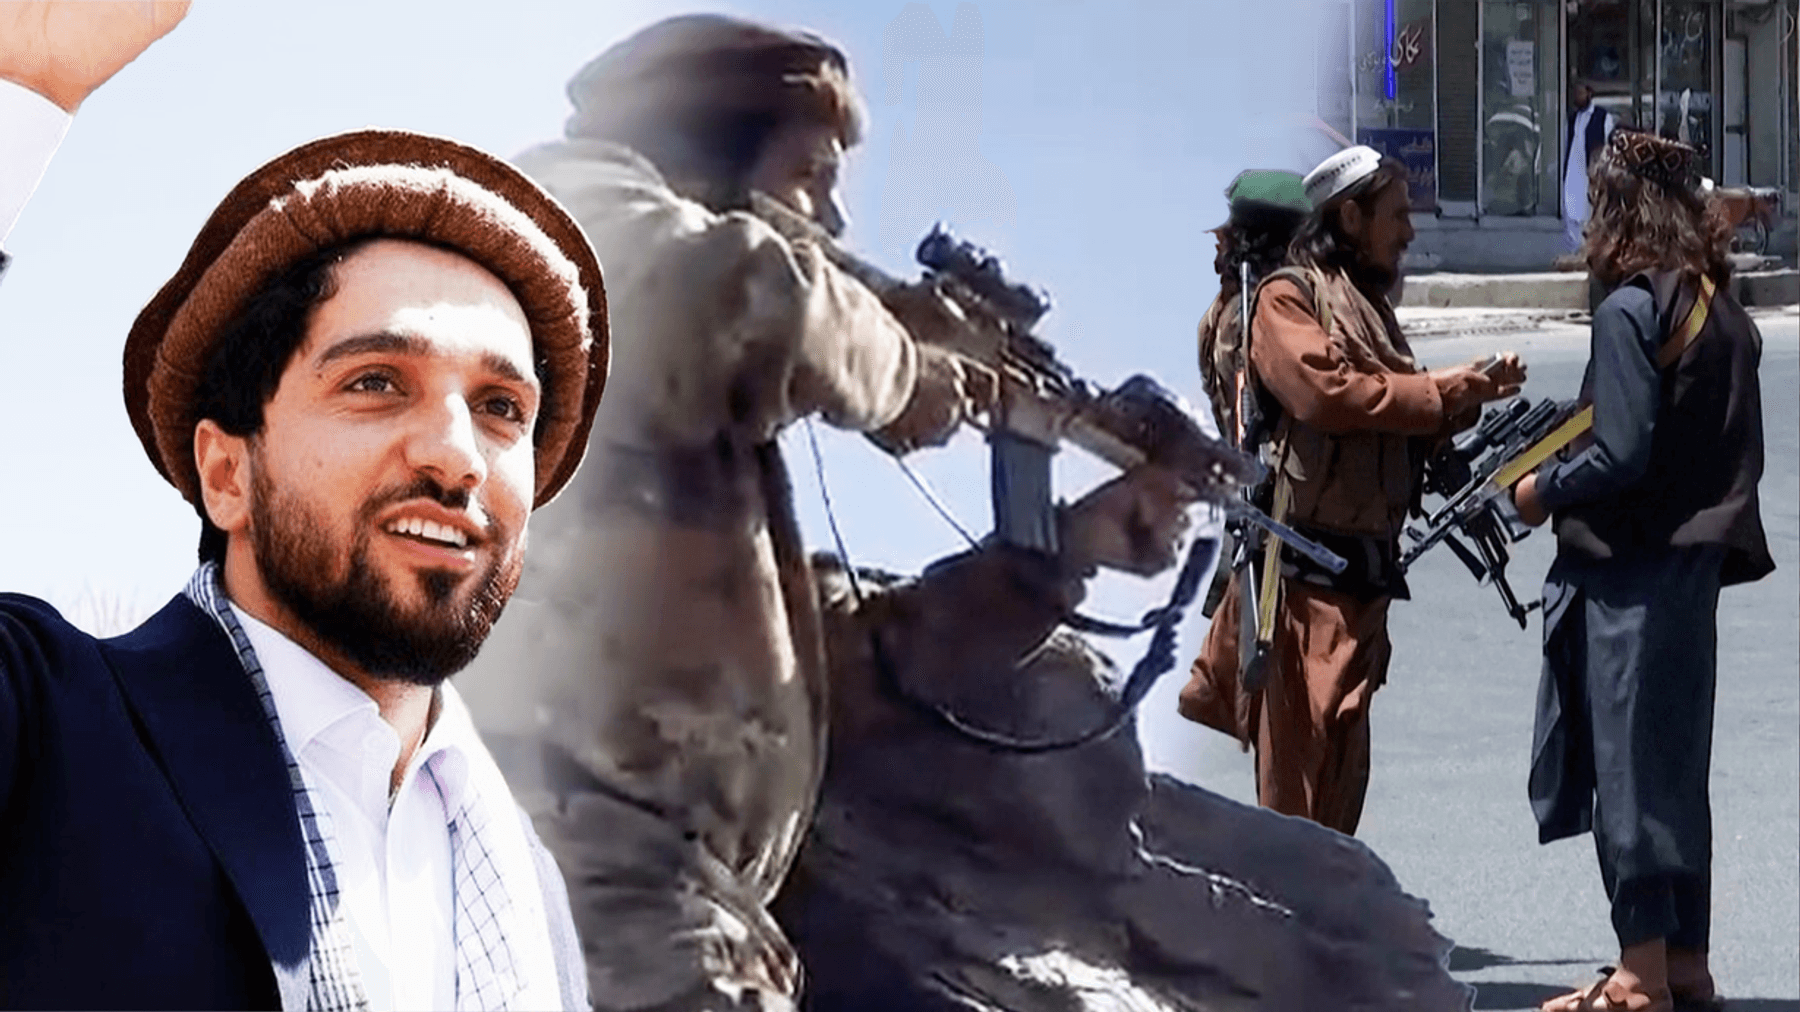 Opstandelingen melden arrestatie van 40 Taliban-strijders